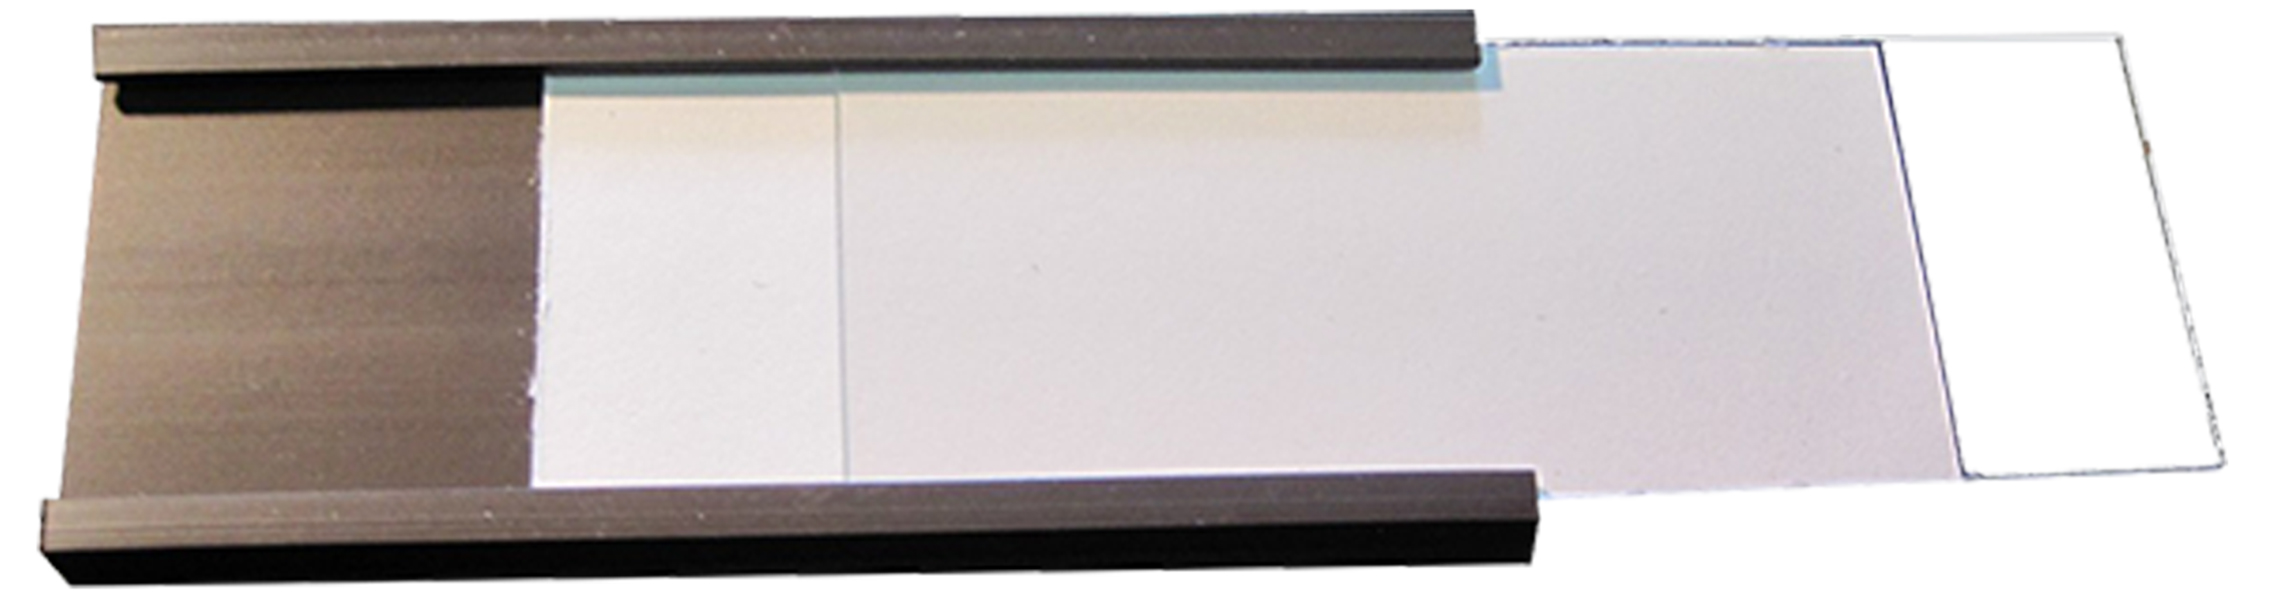 Magnetische C-Profile / Etikettenhalter für Labels / Etiketten